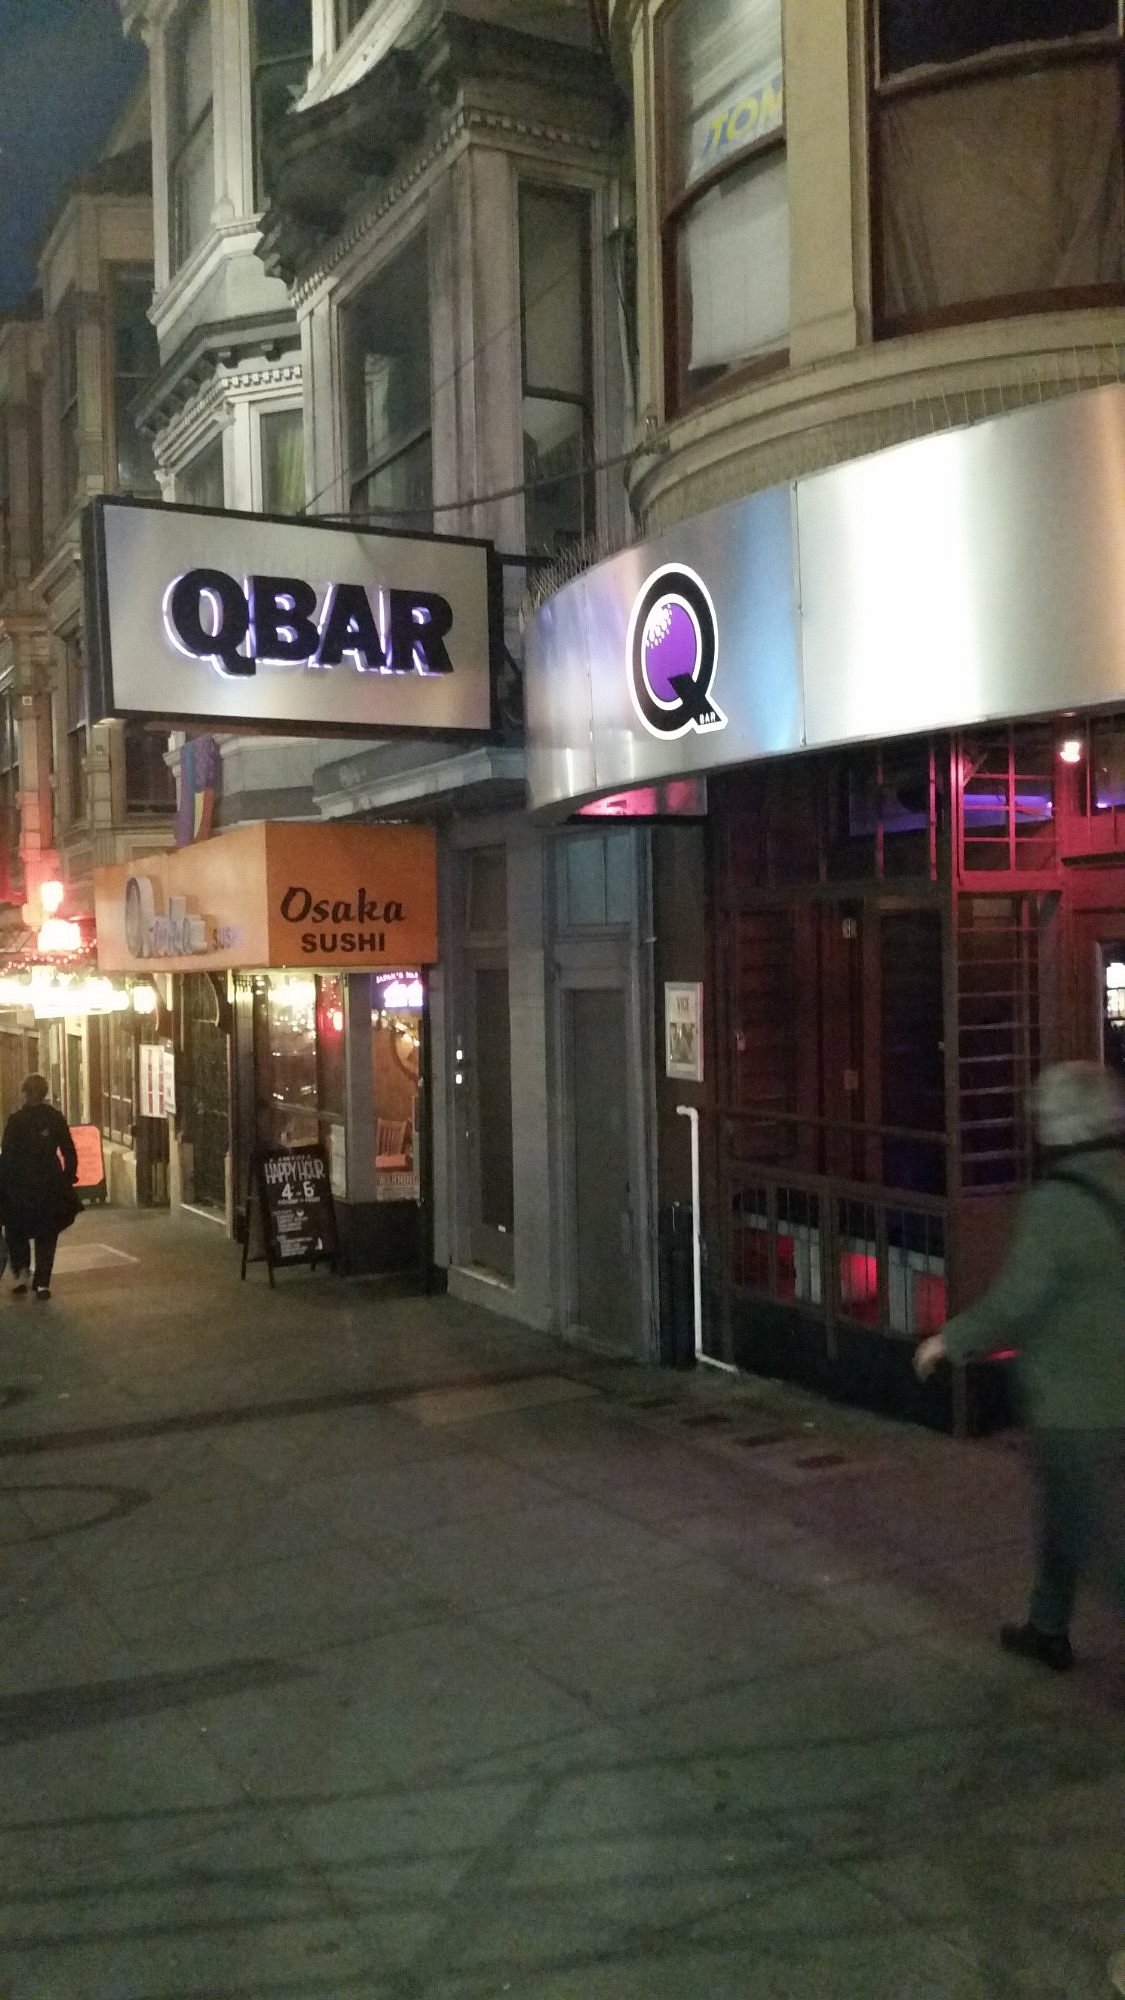 Q Bar ở San Francisco là một địa điểm vui chơi và giải trí tuyệt vời cho bạn và bạn bè của bạn. Tất cả những gì bạn cần biết trước khi đến đây đã được tóm gọn trong bài viết này, từ không gian sang trọng đến đồ uống thơm ngon và âm nhạc sôi động.